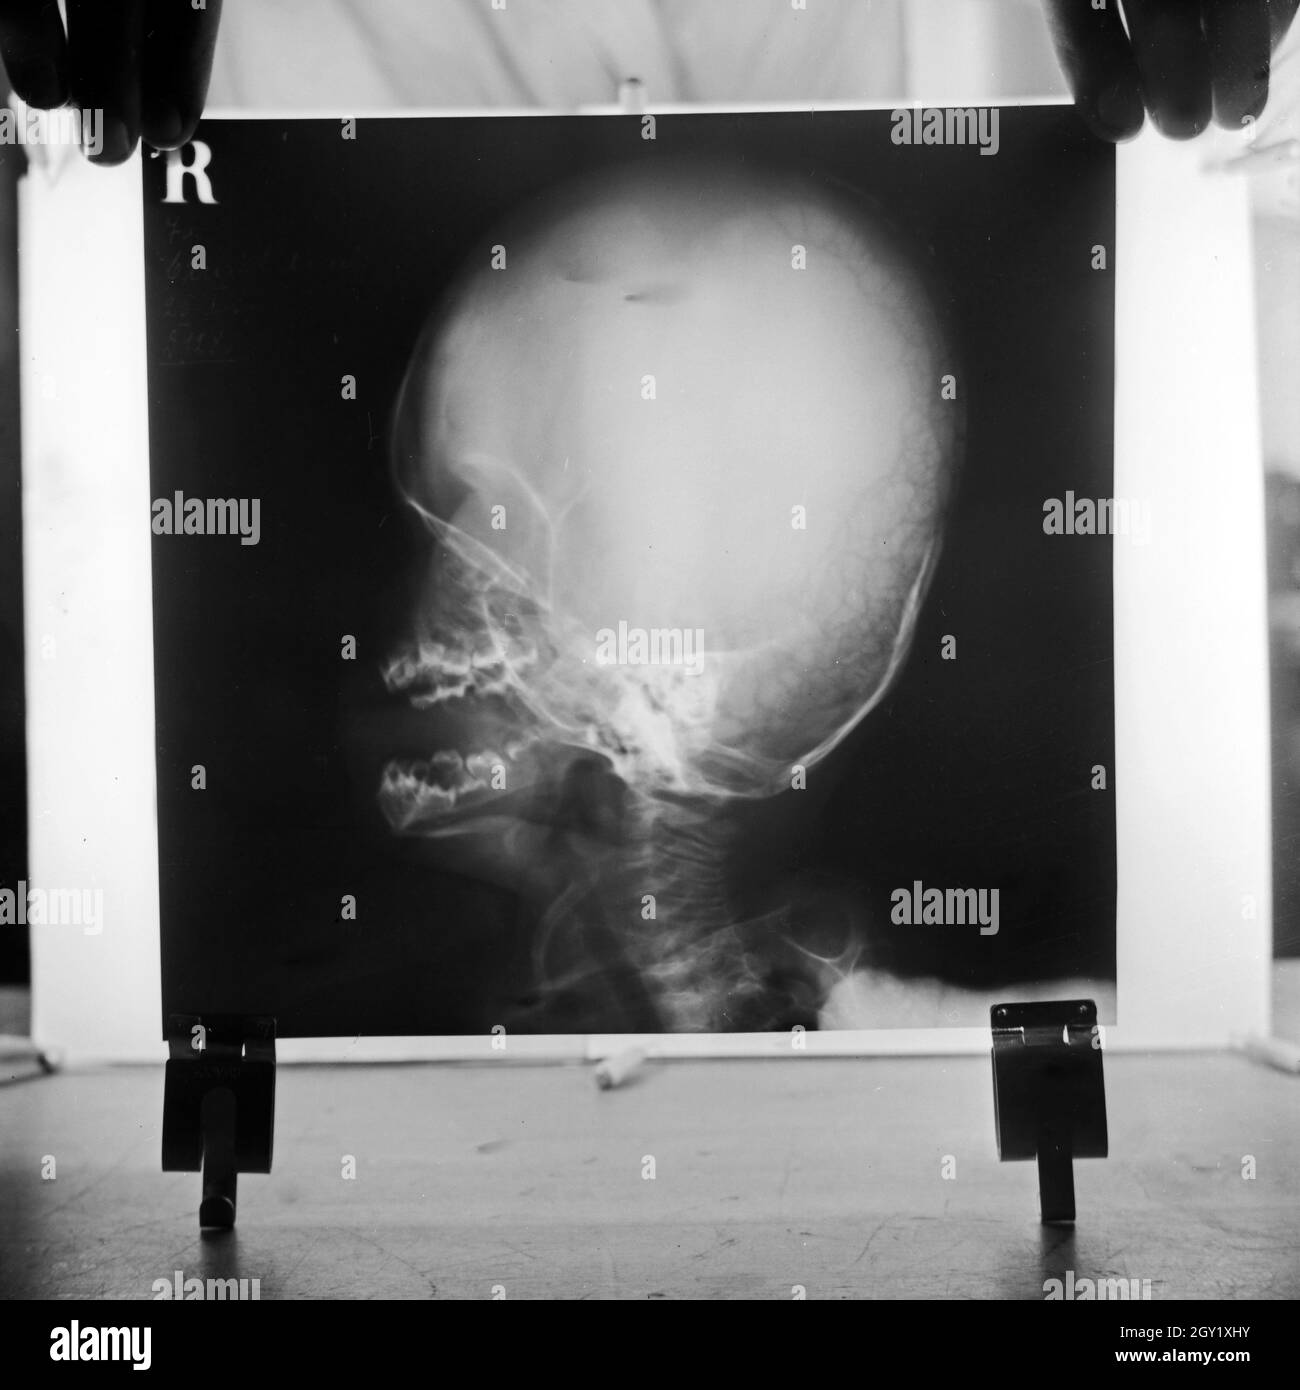 Reproduktion eines Röntgenbilds eines Schädels, Deutschland 1930er Jahre. Reproduktion von einem Röntgenbild eines Schädels, Deutschland 1930. Stockfoto